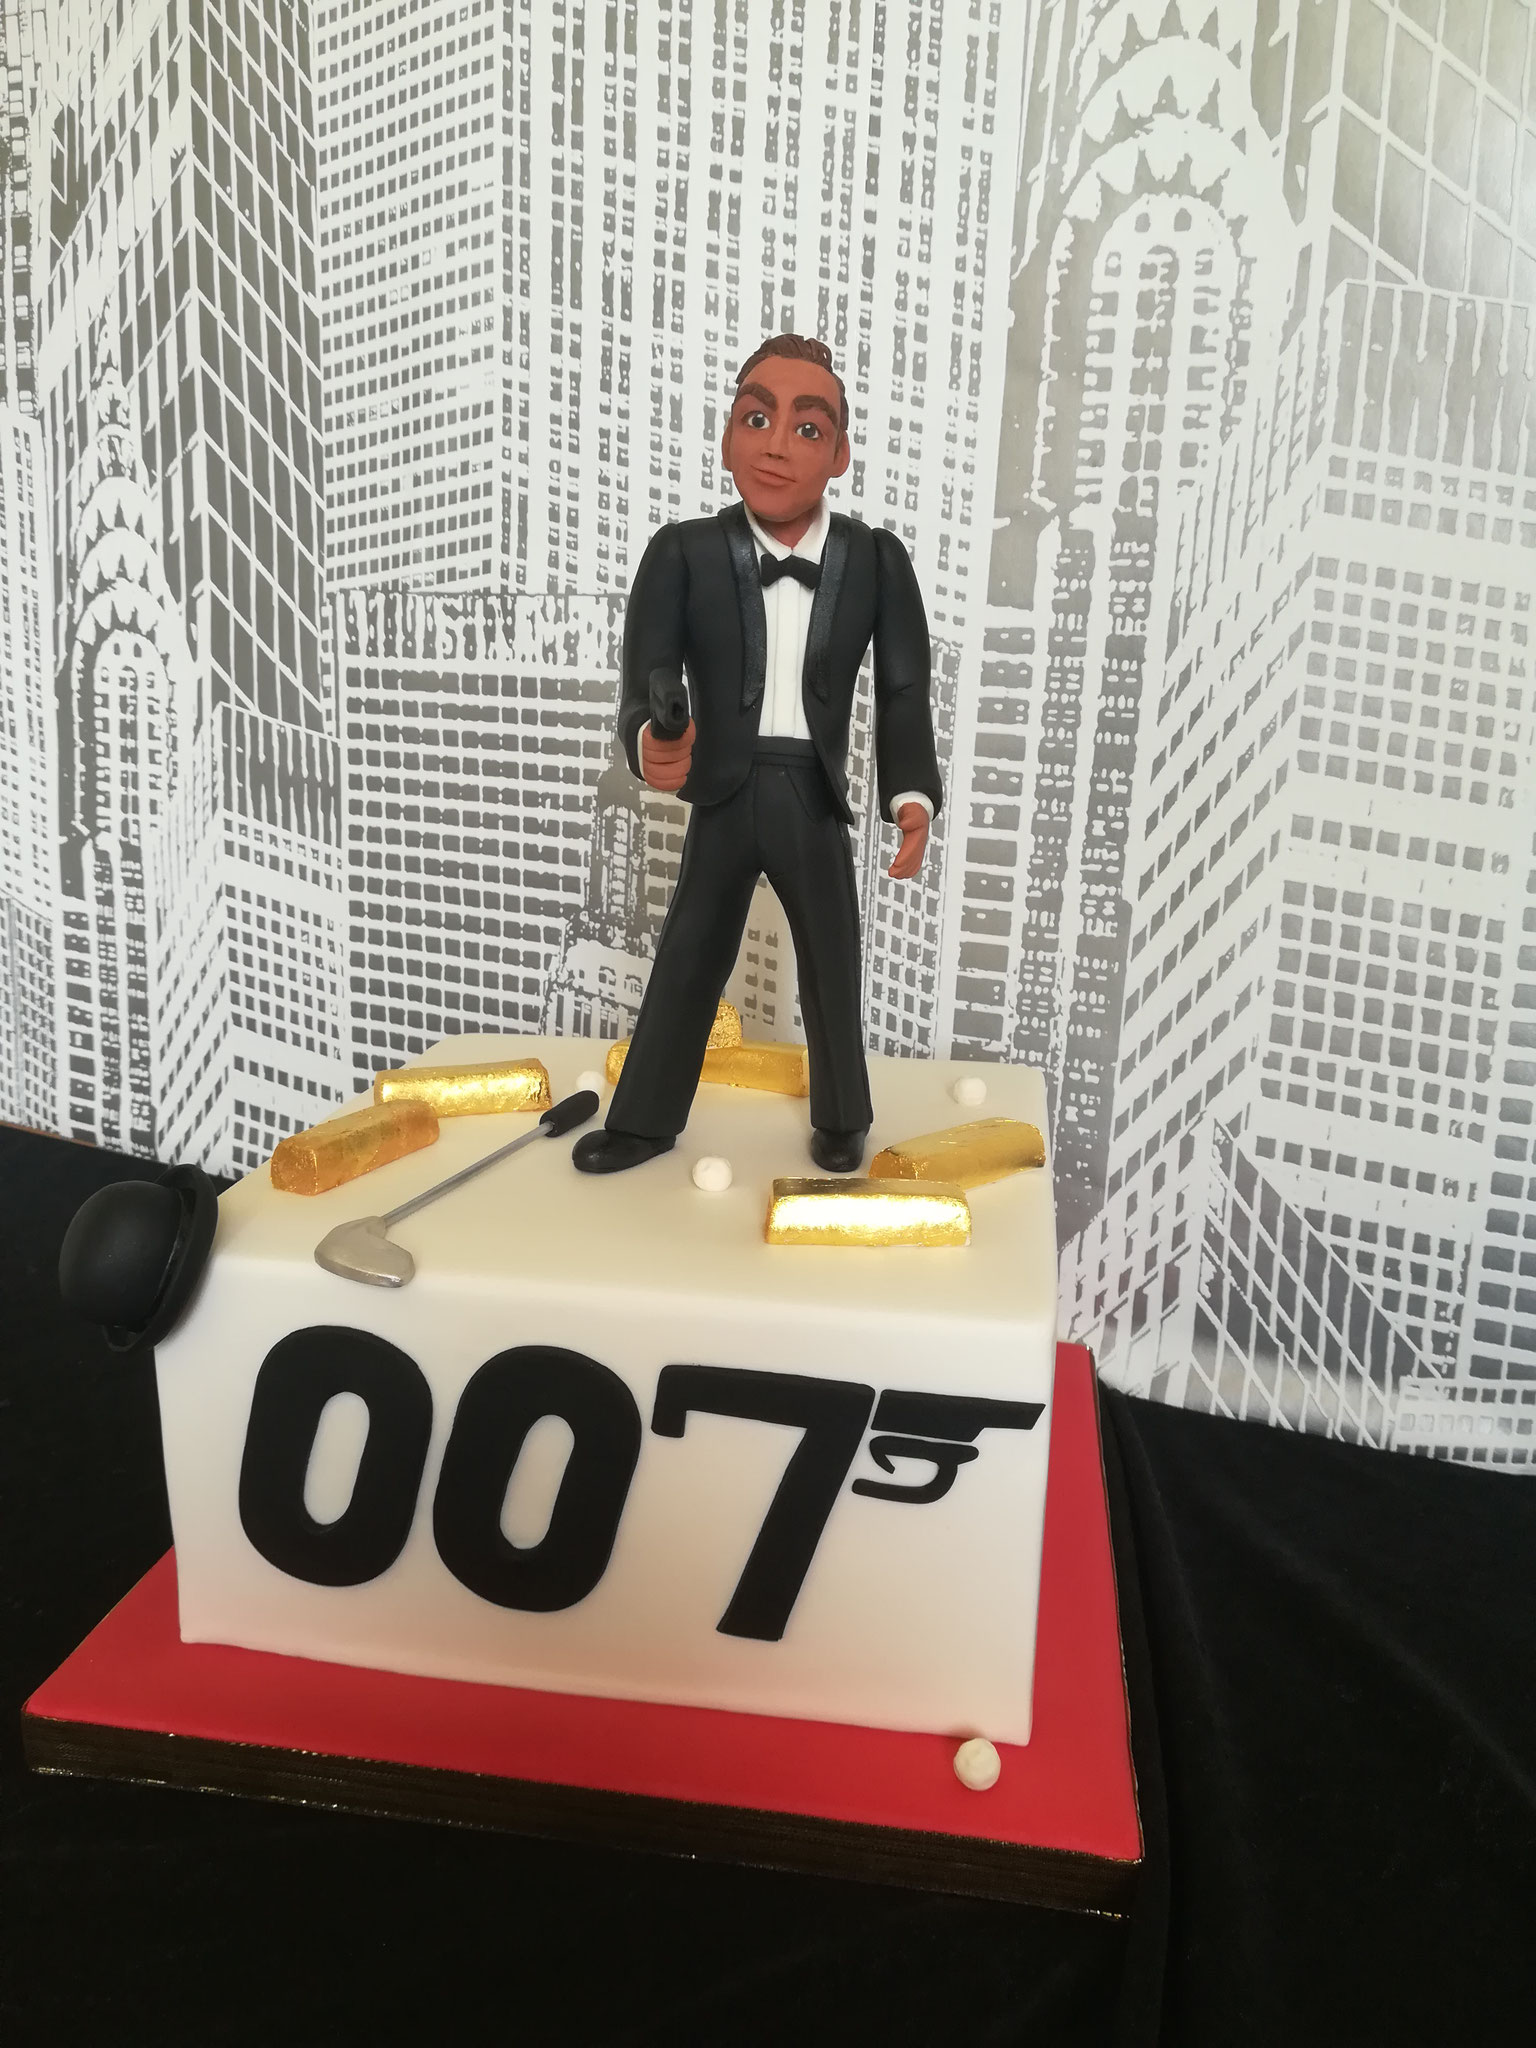 Bond - James Bond Cake